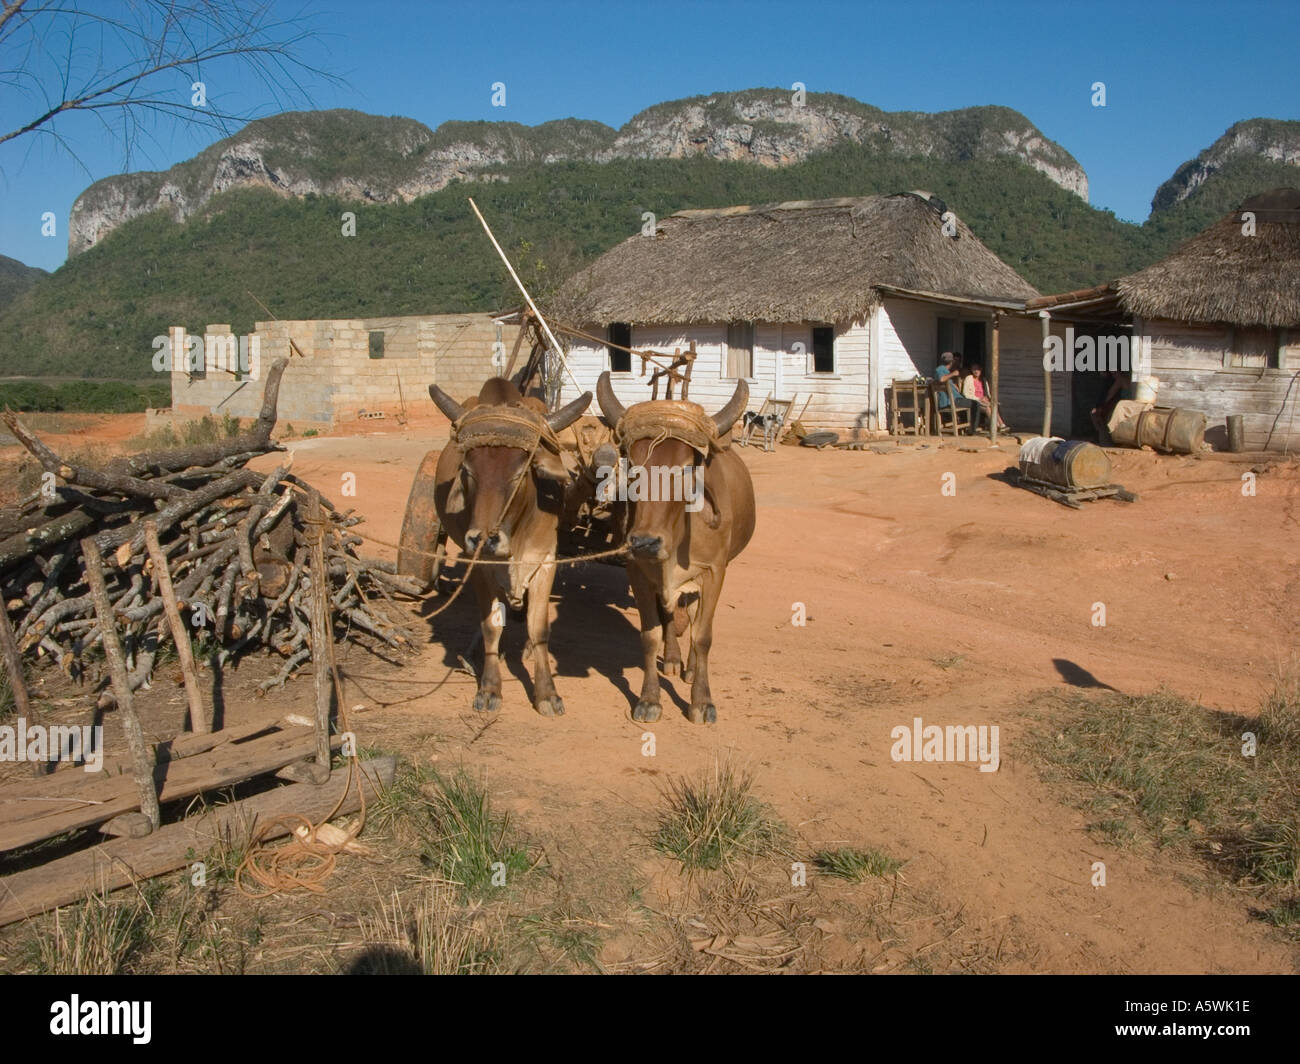 cuba pinar del rio province farm and farmyard with oxen Stock Photo